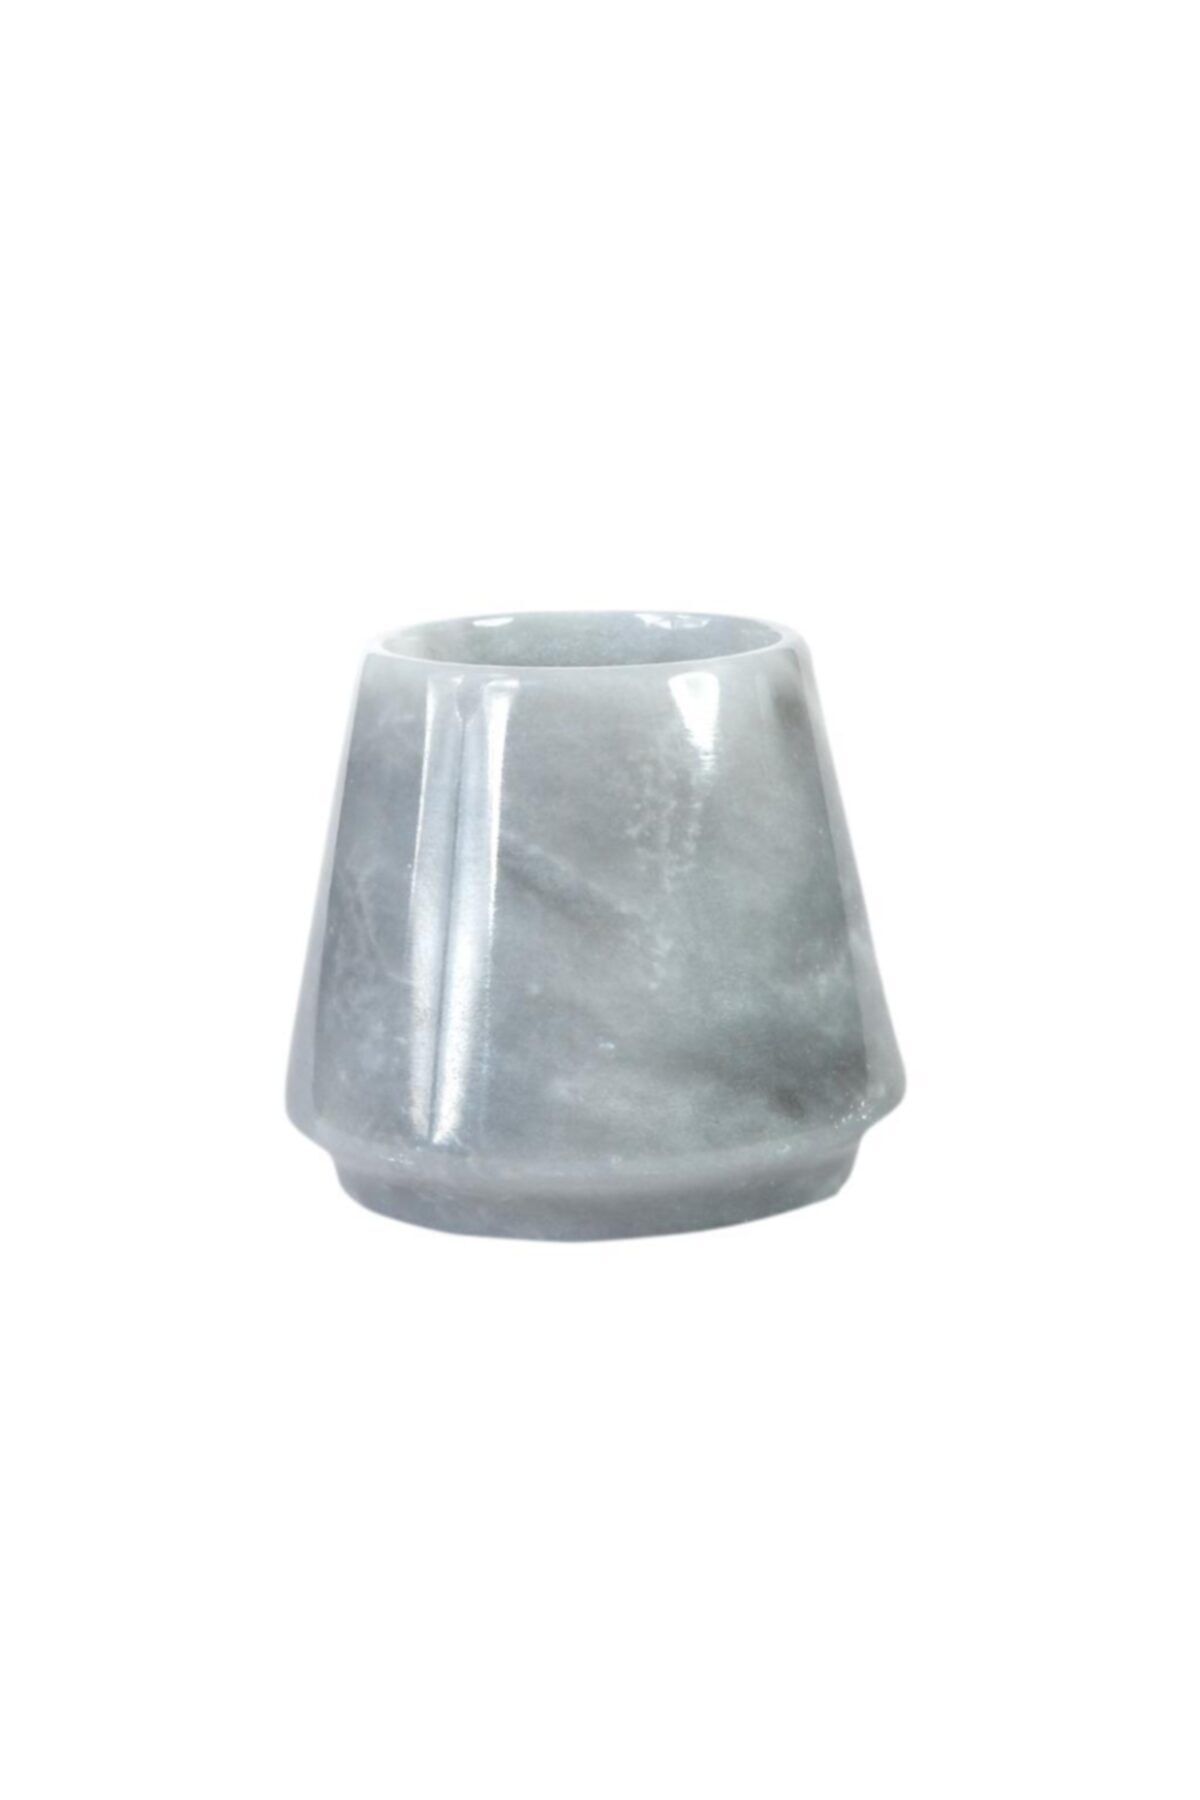 THE GROOVE Marble Cup - 2391 - Elisa - Gri - 8,5 X 8,5 Cm Dek